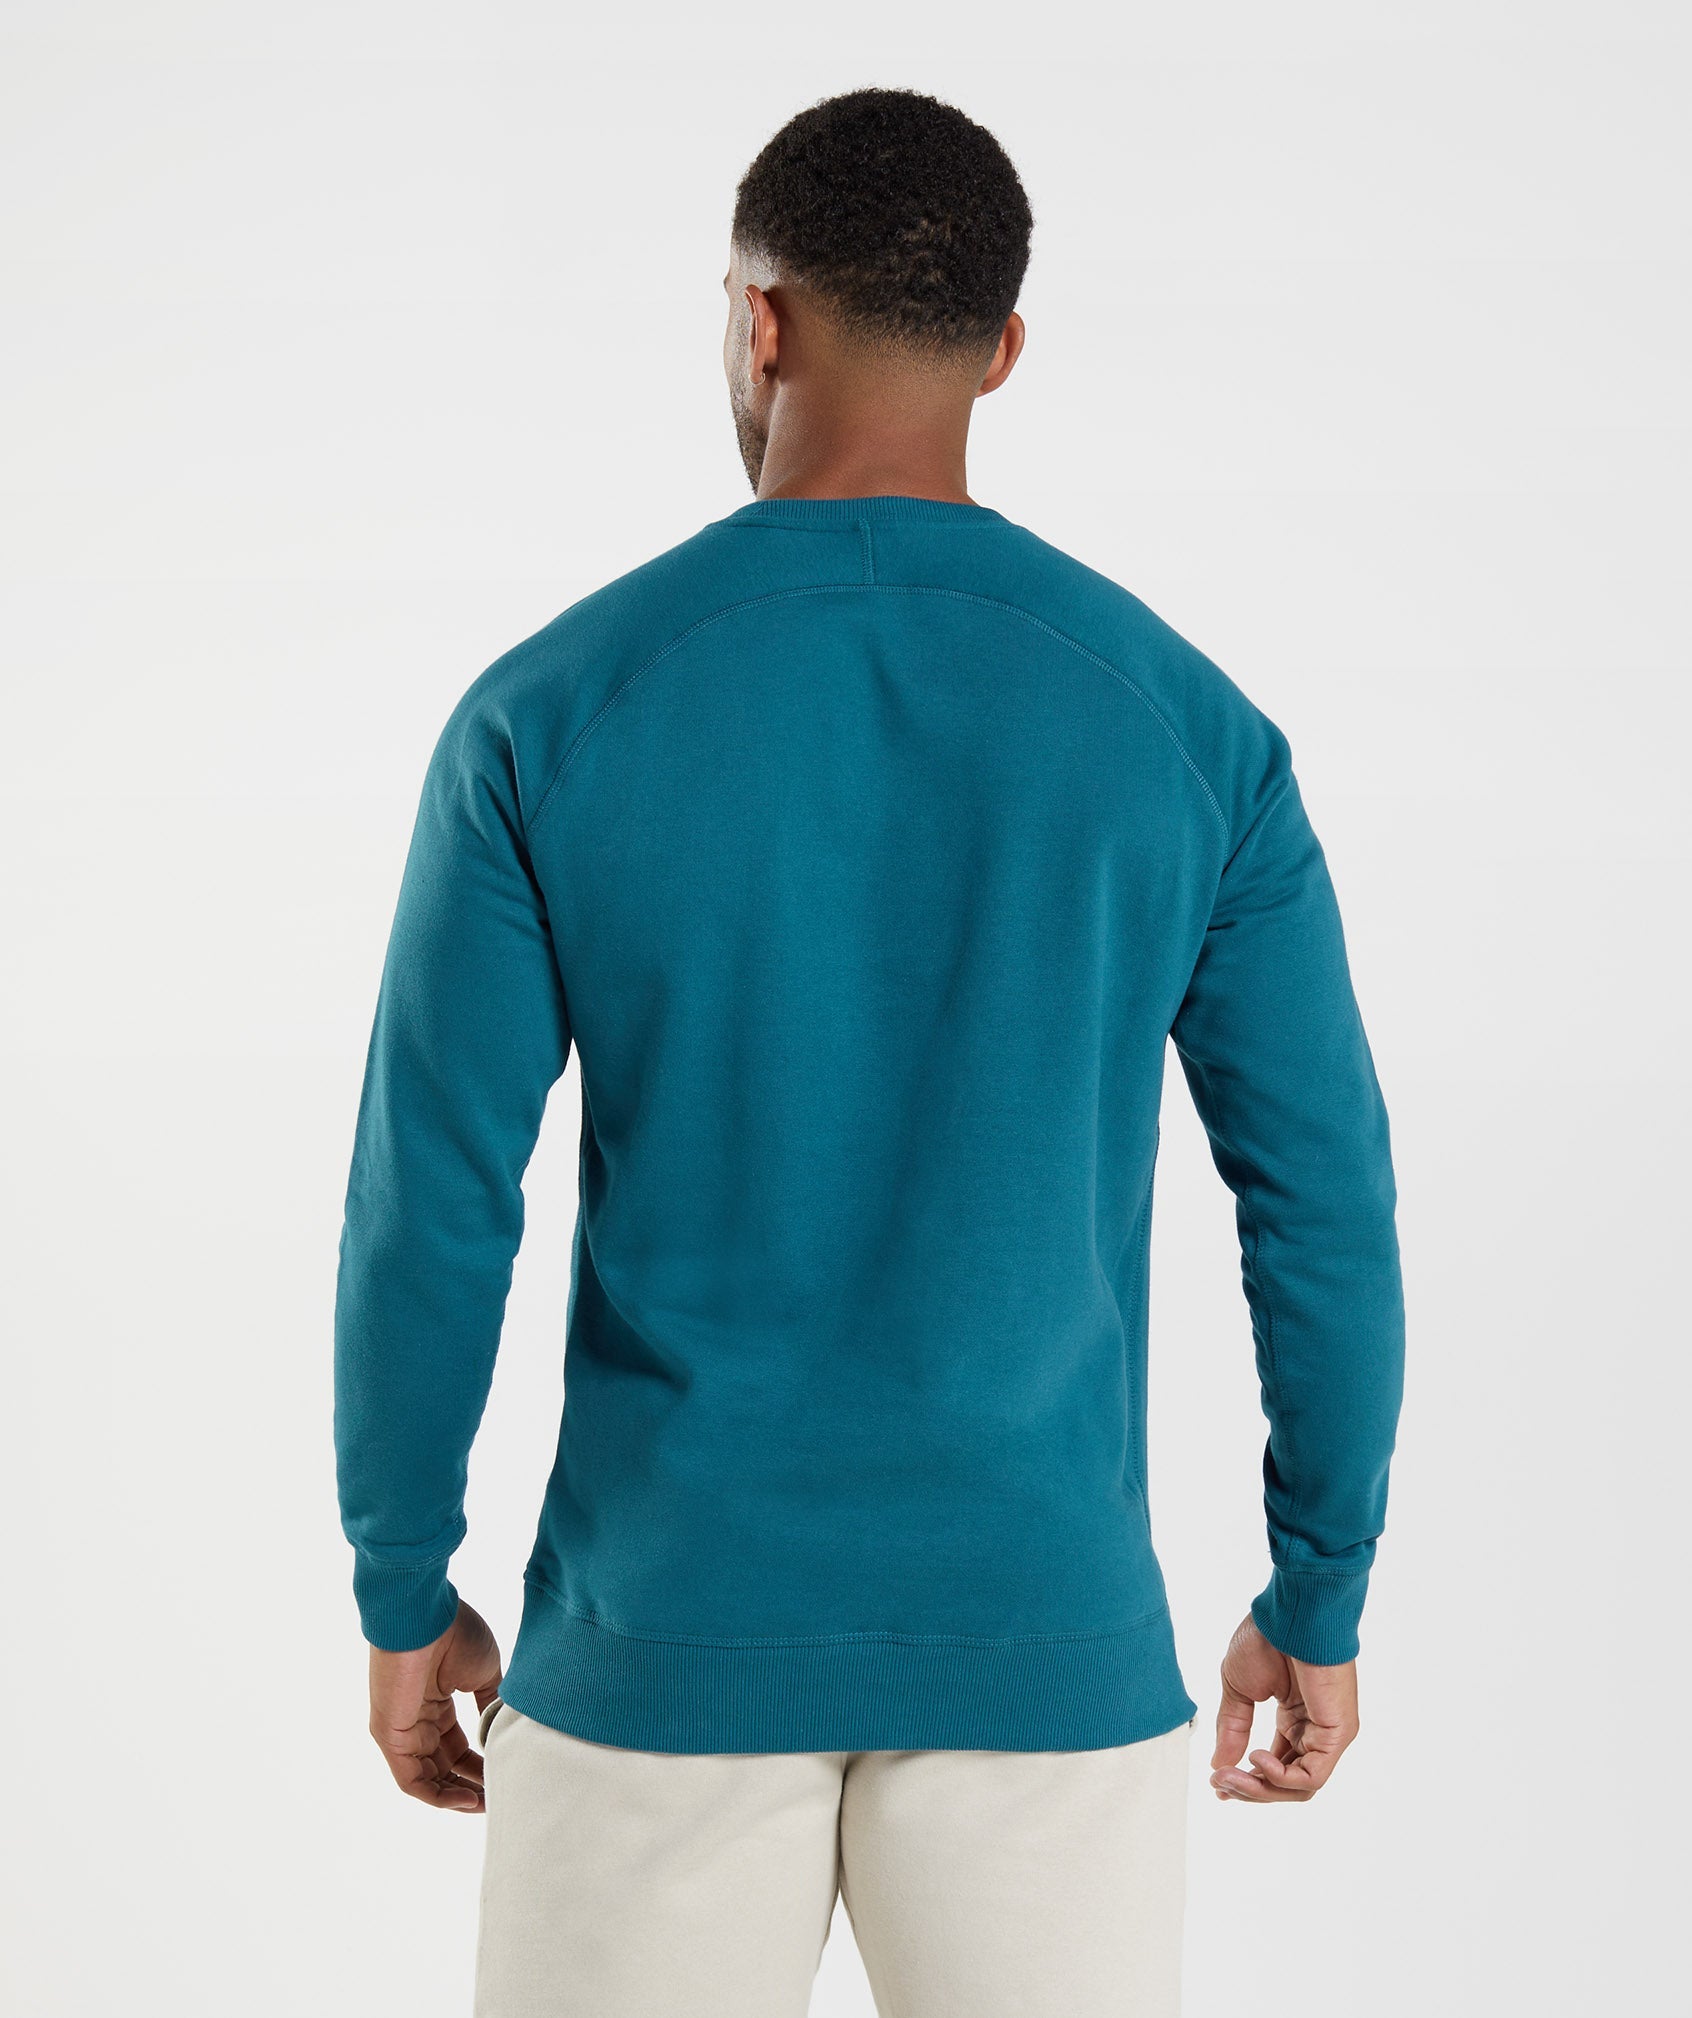 Crest Sweatshirt in Atlantic Blue - view 2